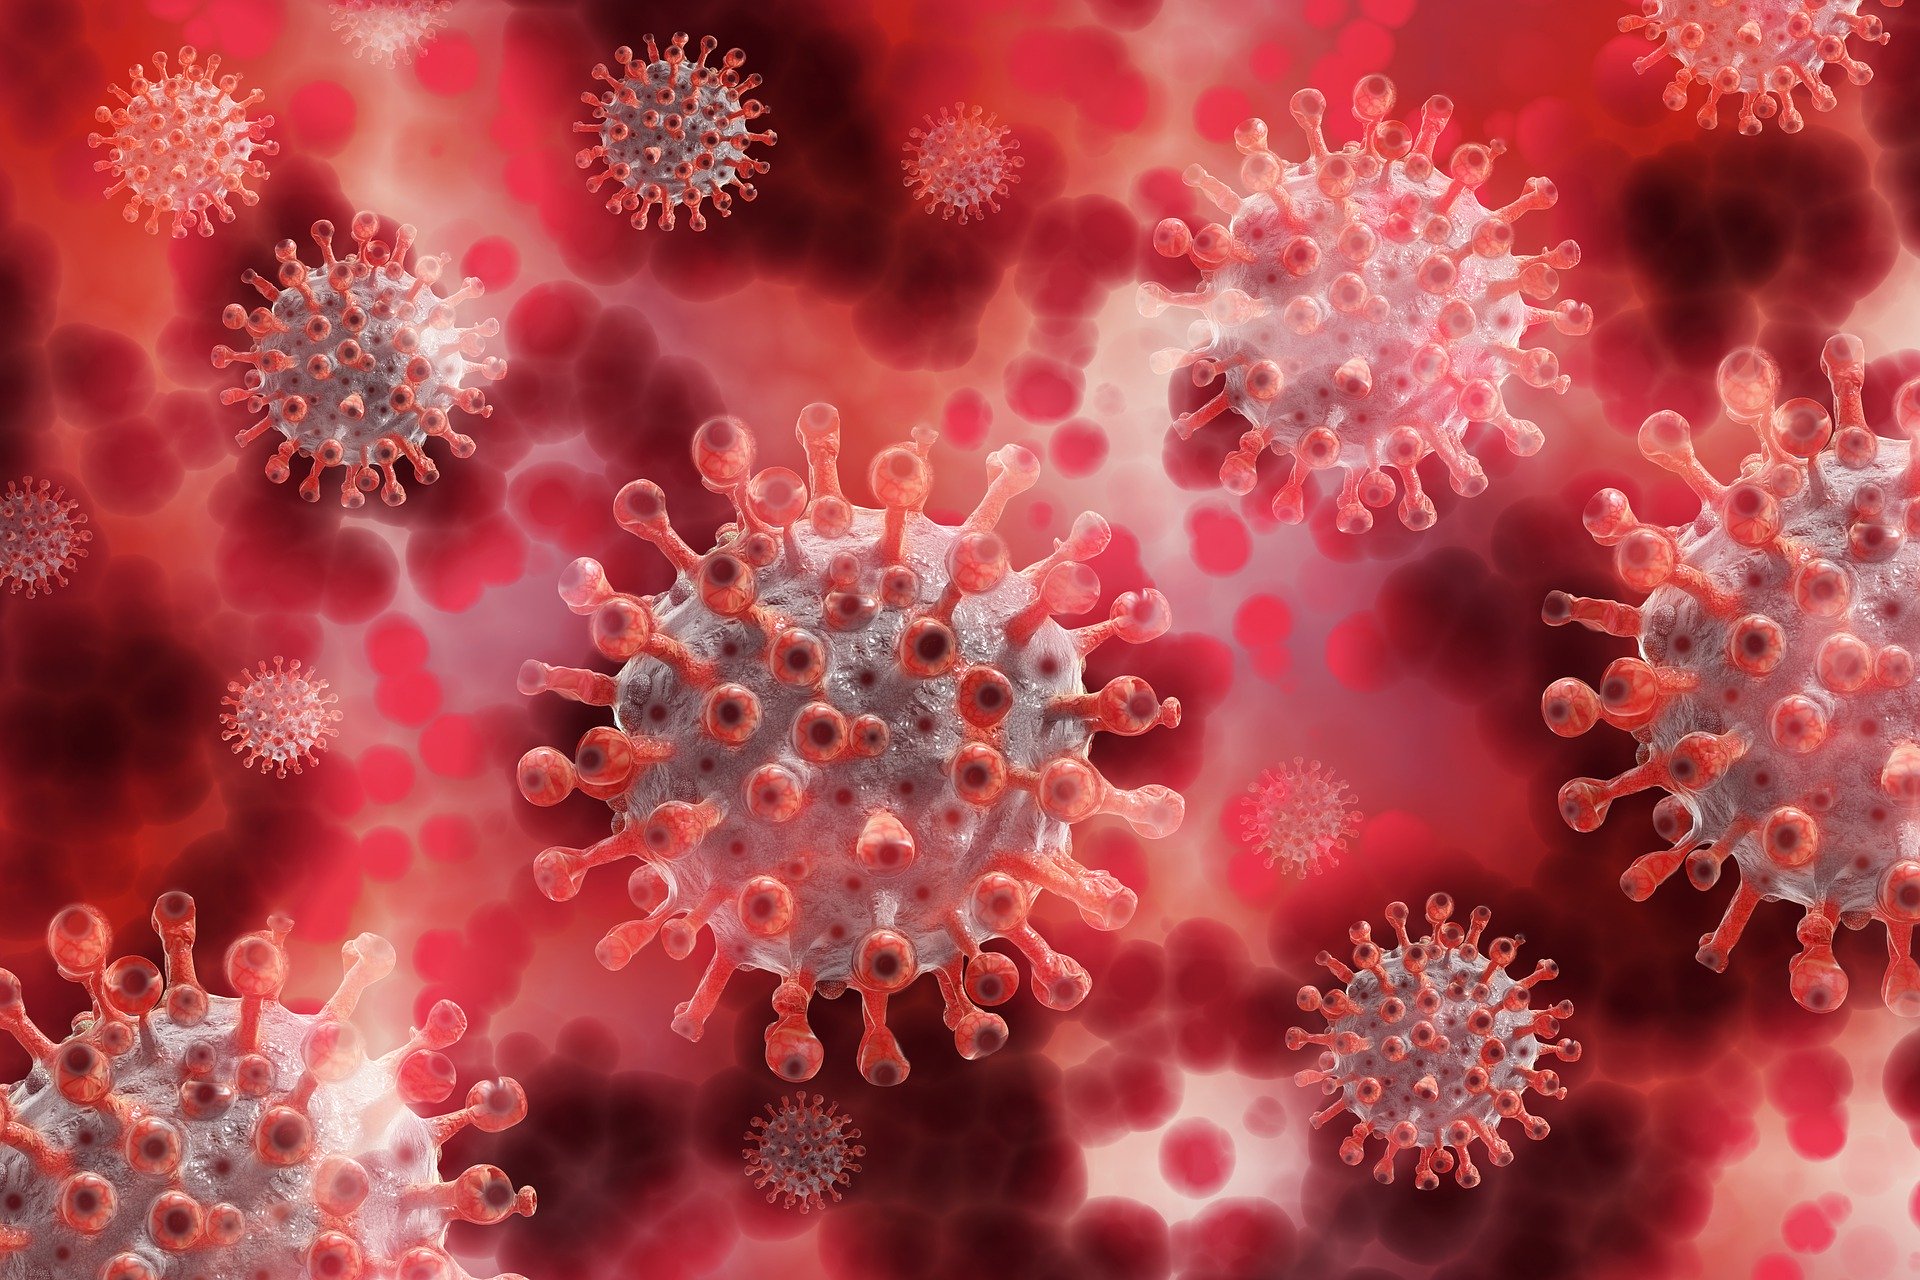 Coronavirus: in Toscana 341 casi positivi, età media 38anni. I decessi sono 16